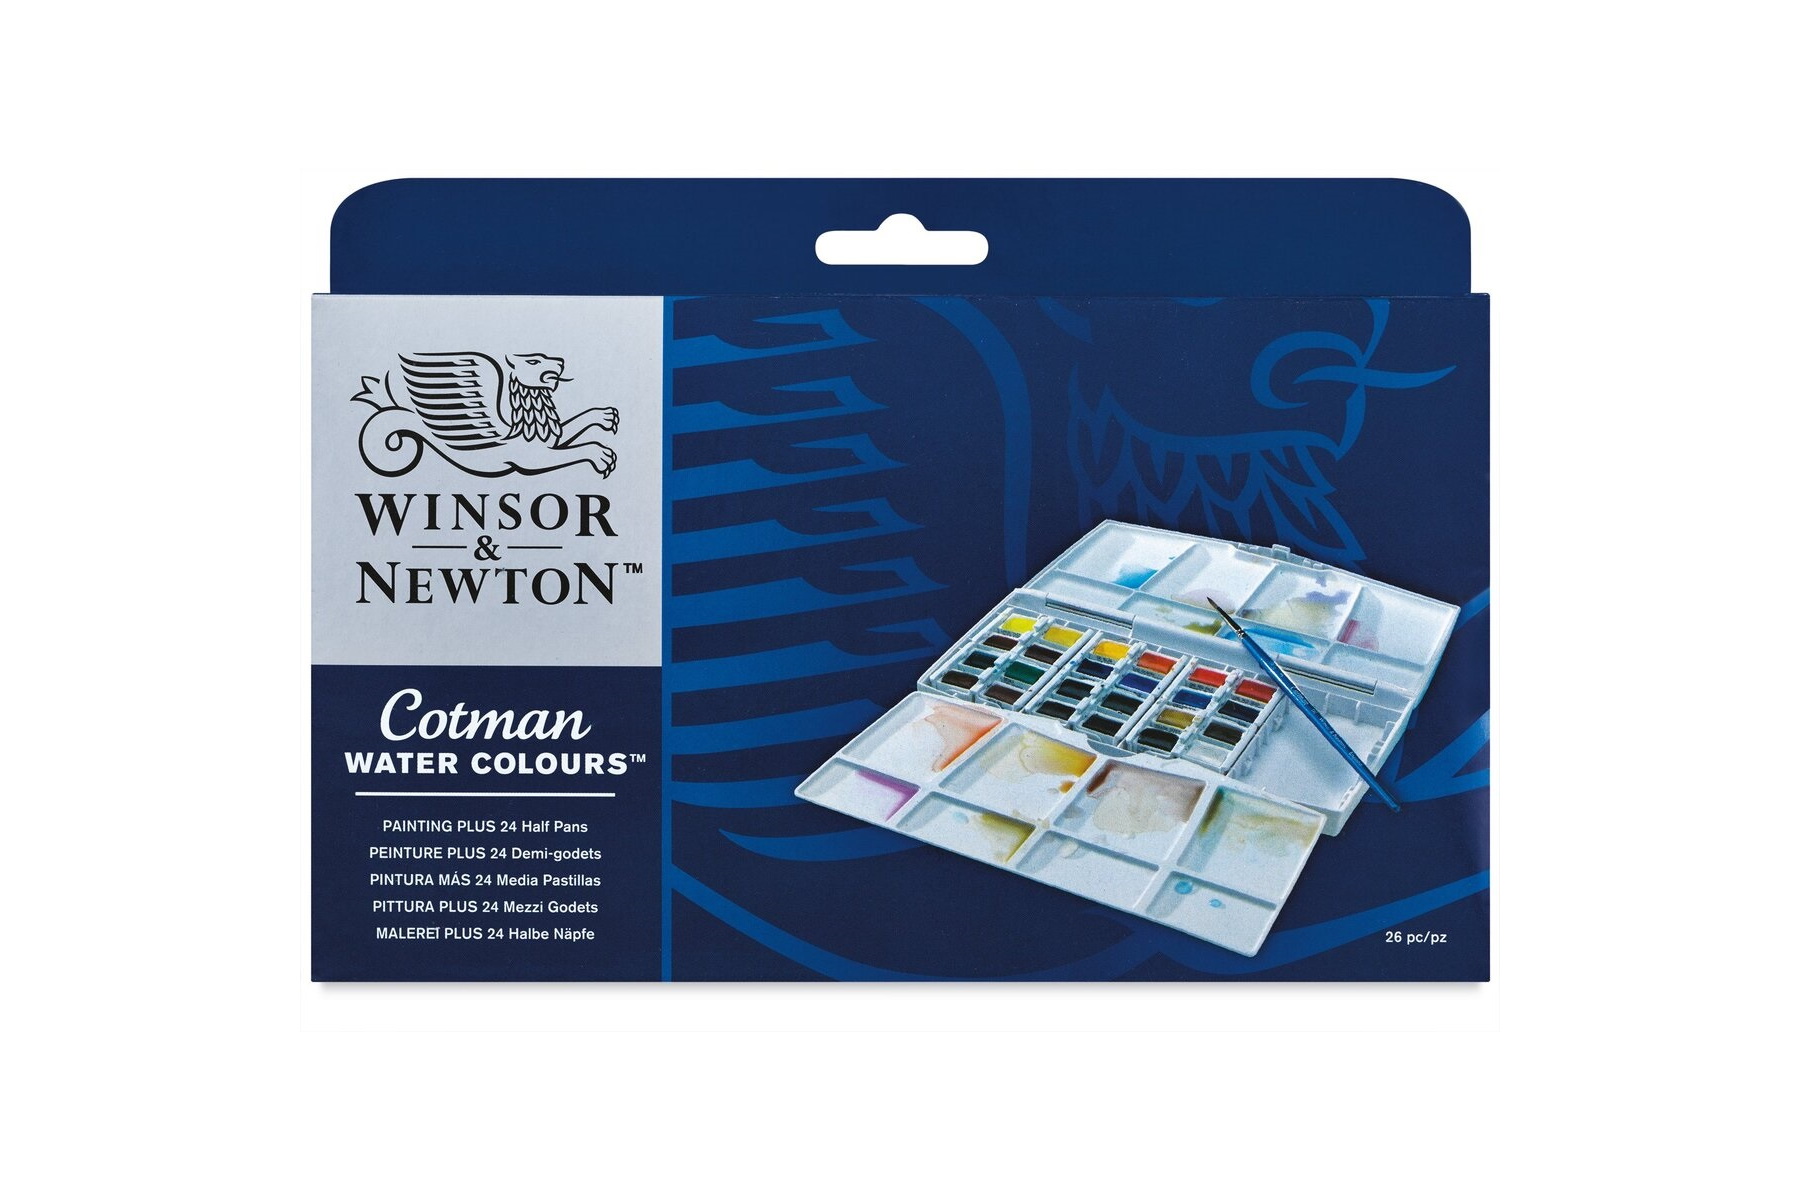 Winsor & Newton Cotman Watercolor Paint sets